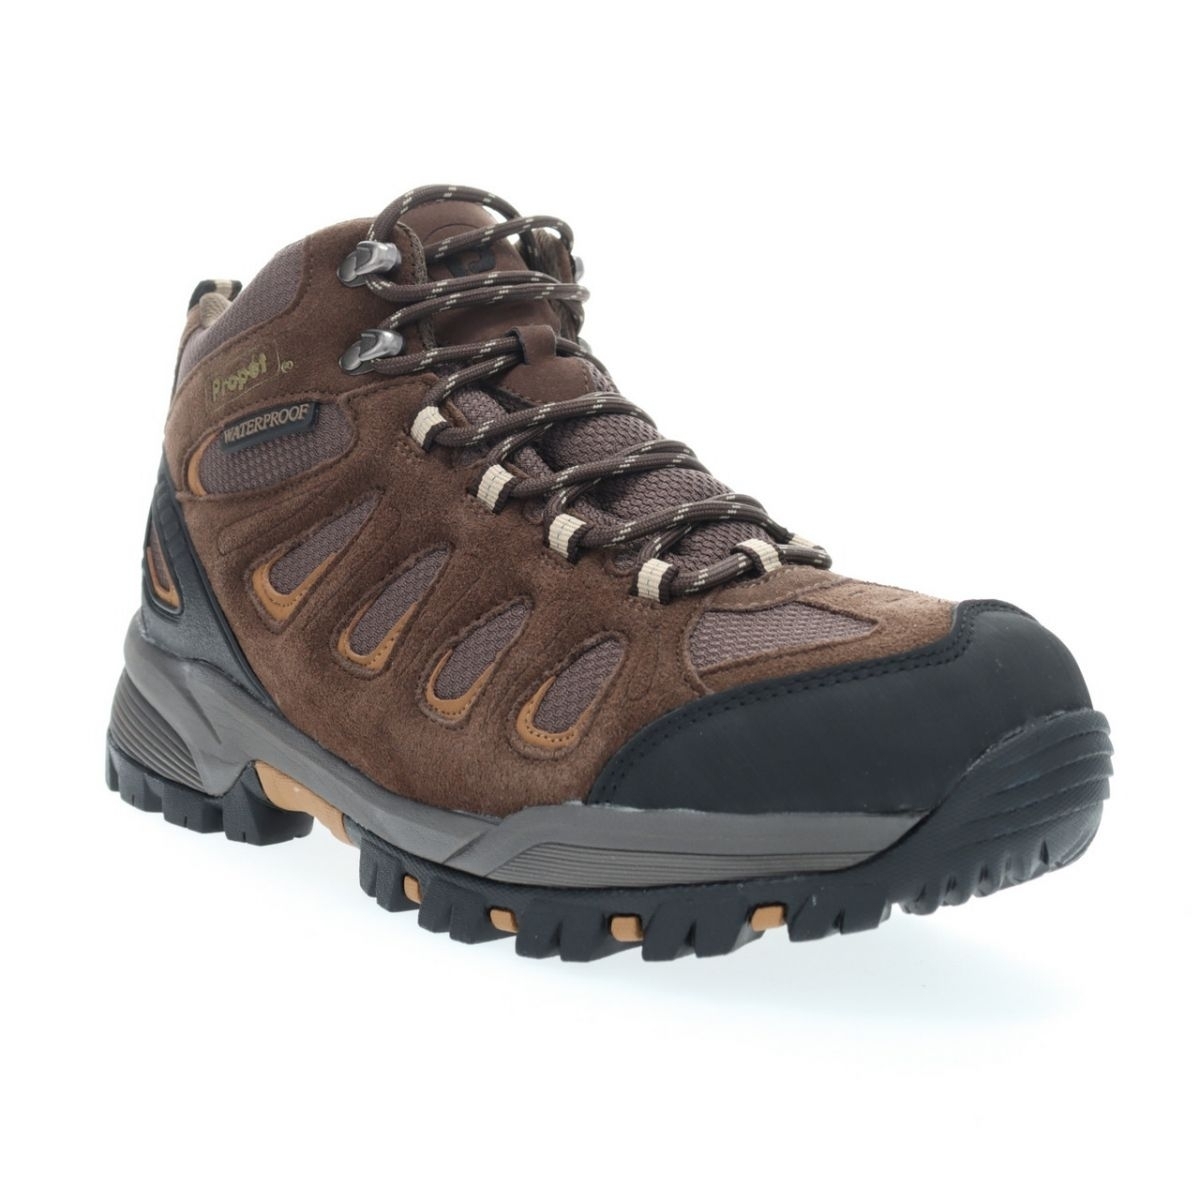 Propet Men's Ridge Walker Hiking Boot Brown - M3599BR 8 XX US Men BROWN - BROWN, 15 X-Wide